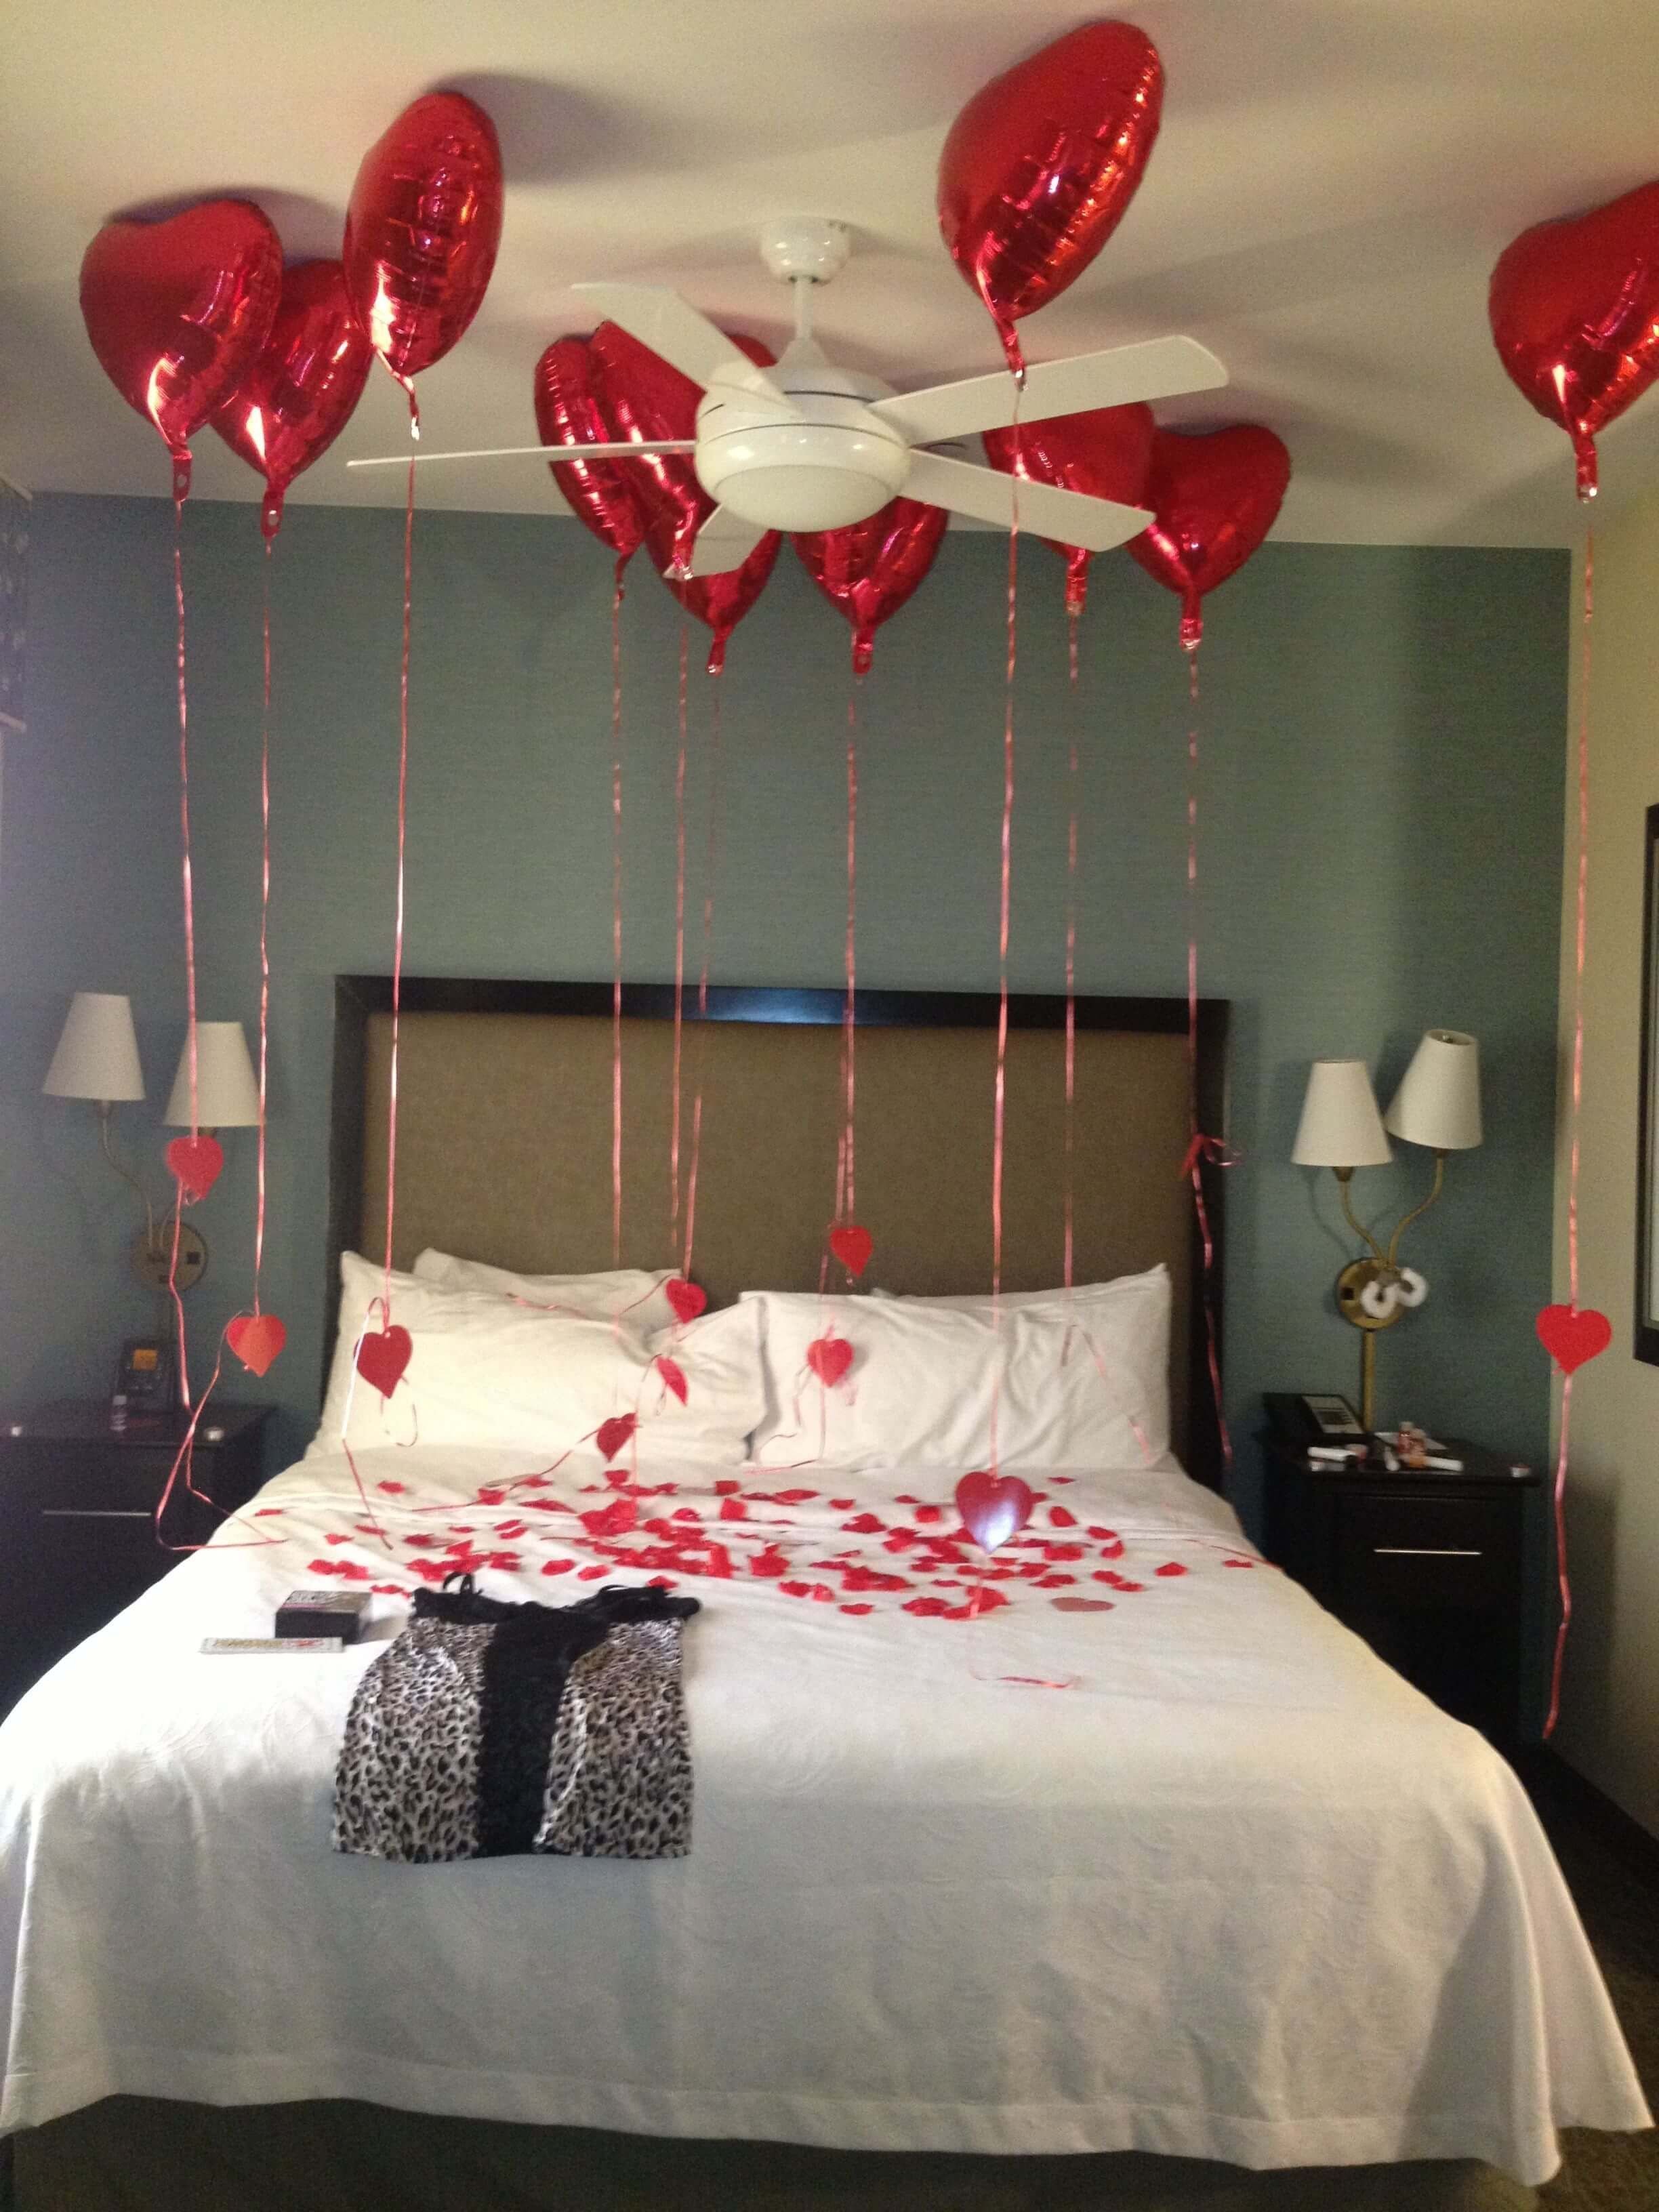 Как украсить комнату для романтического вечера: идеи декора